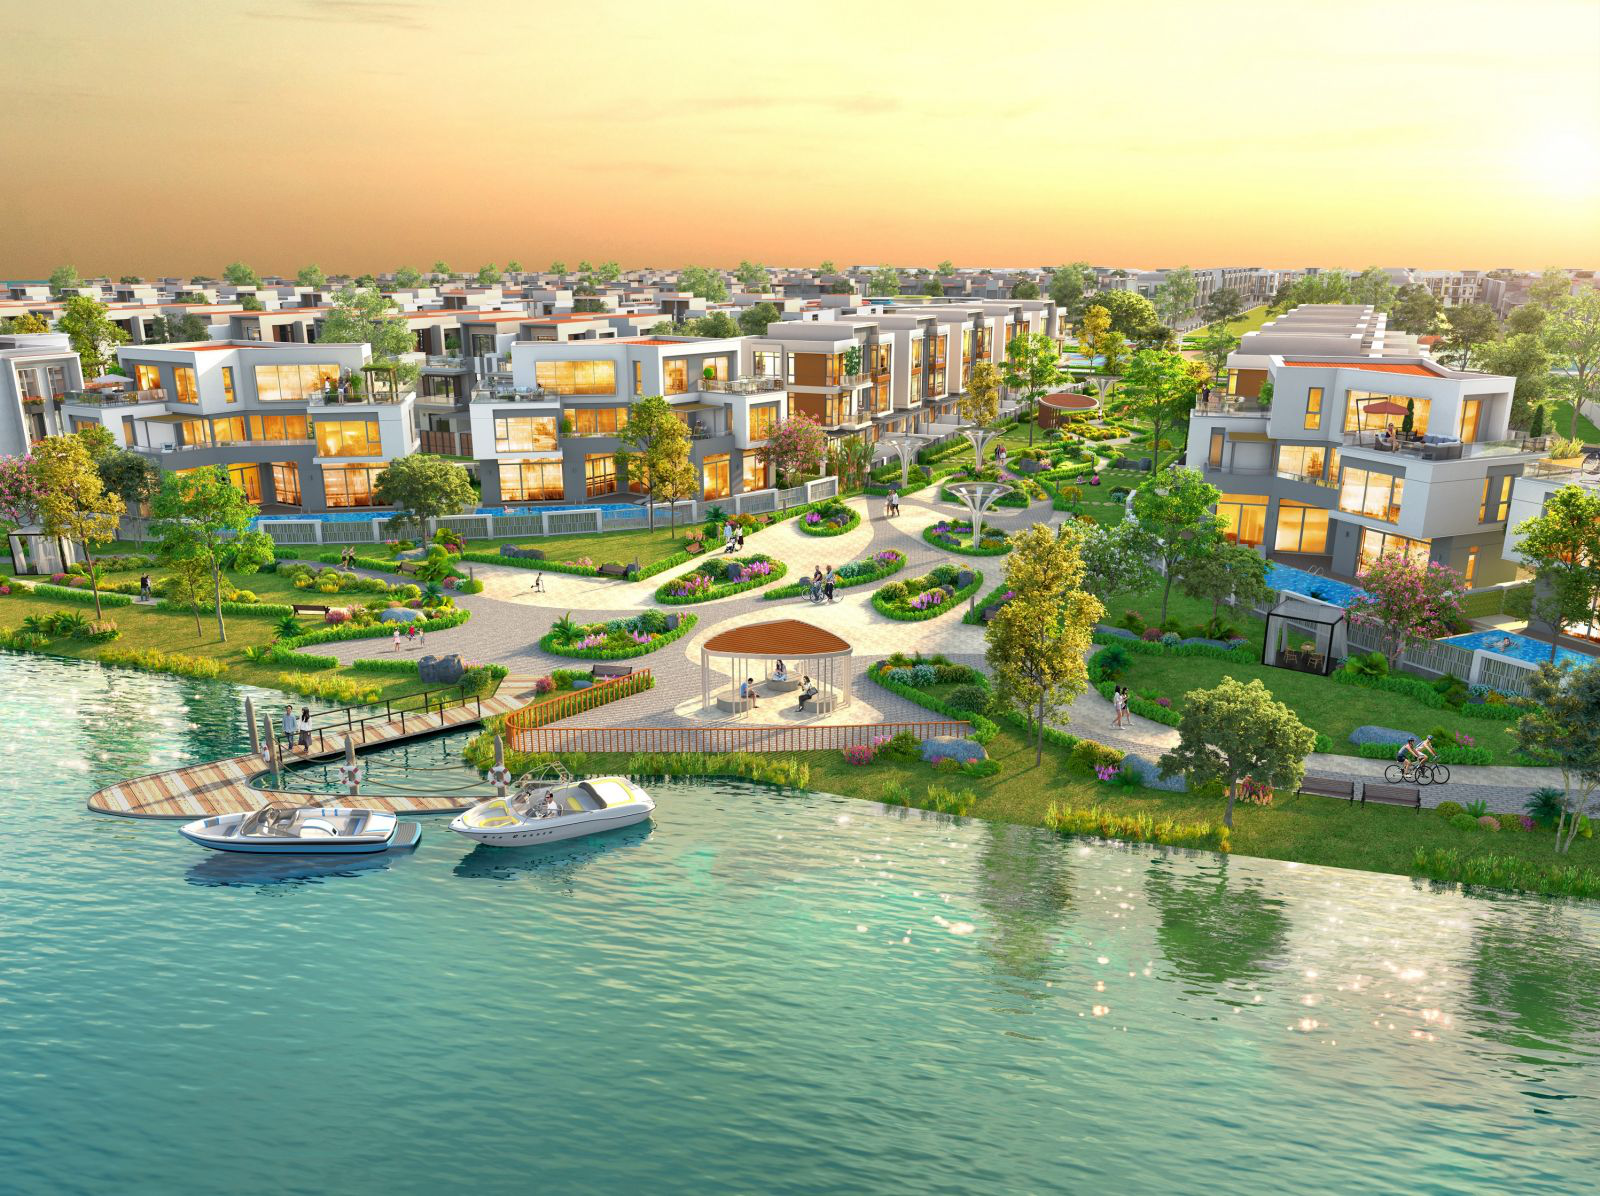 Aqua City tạo ấn tượng bởi không gian sống hài hòa giữa cây xanh sông nước và tiện ích hoàn chỉnh 